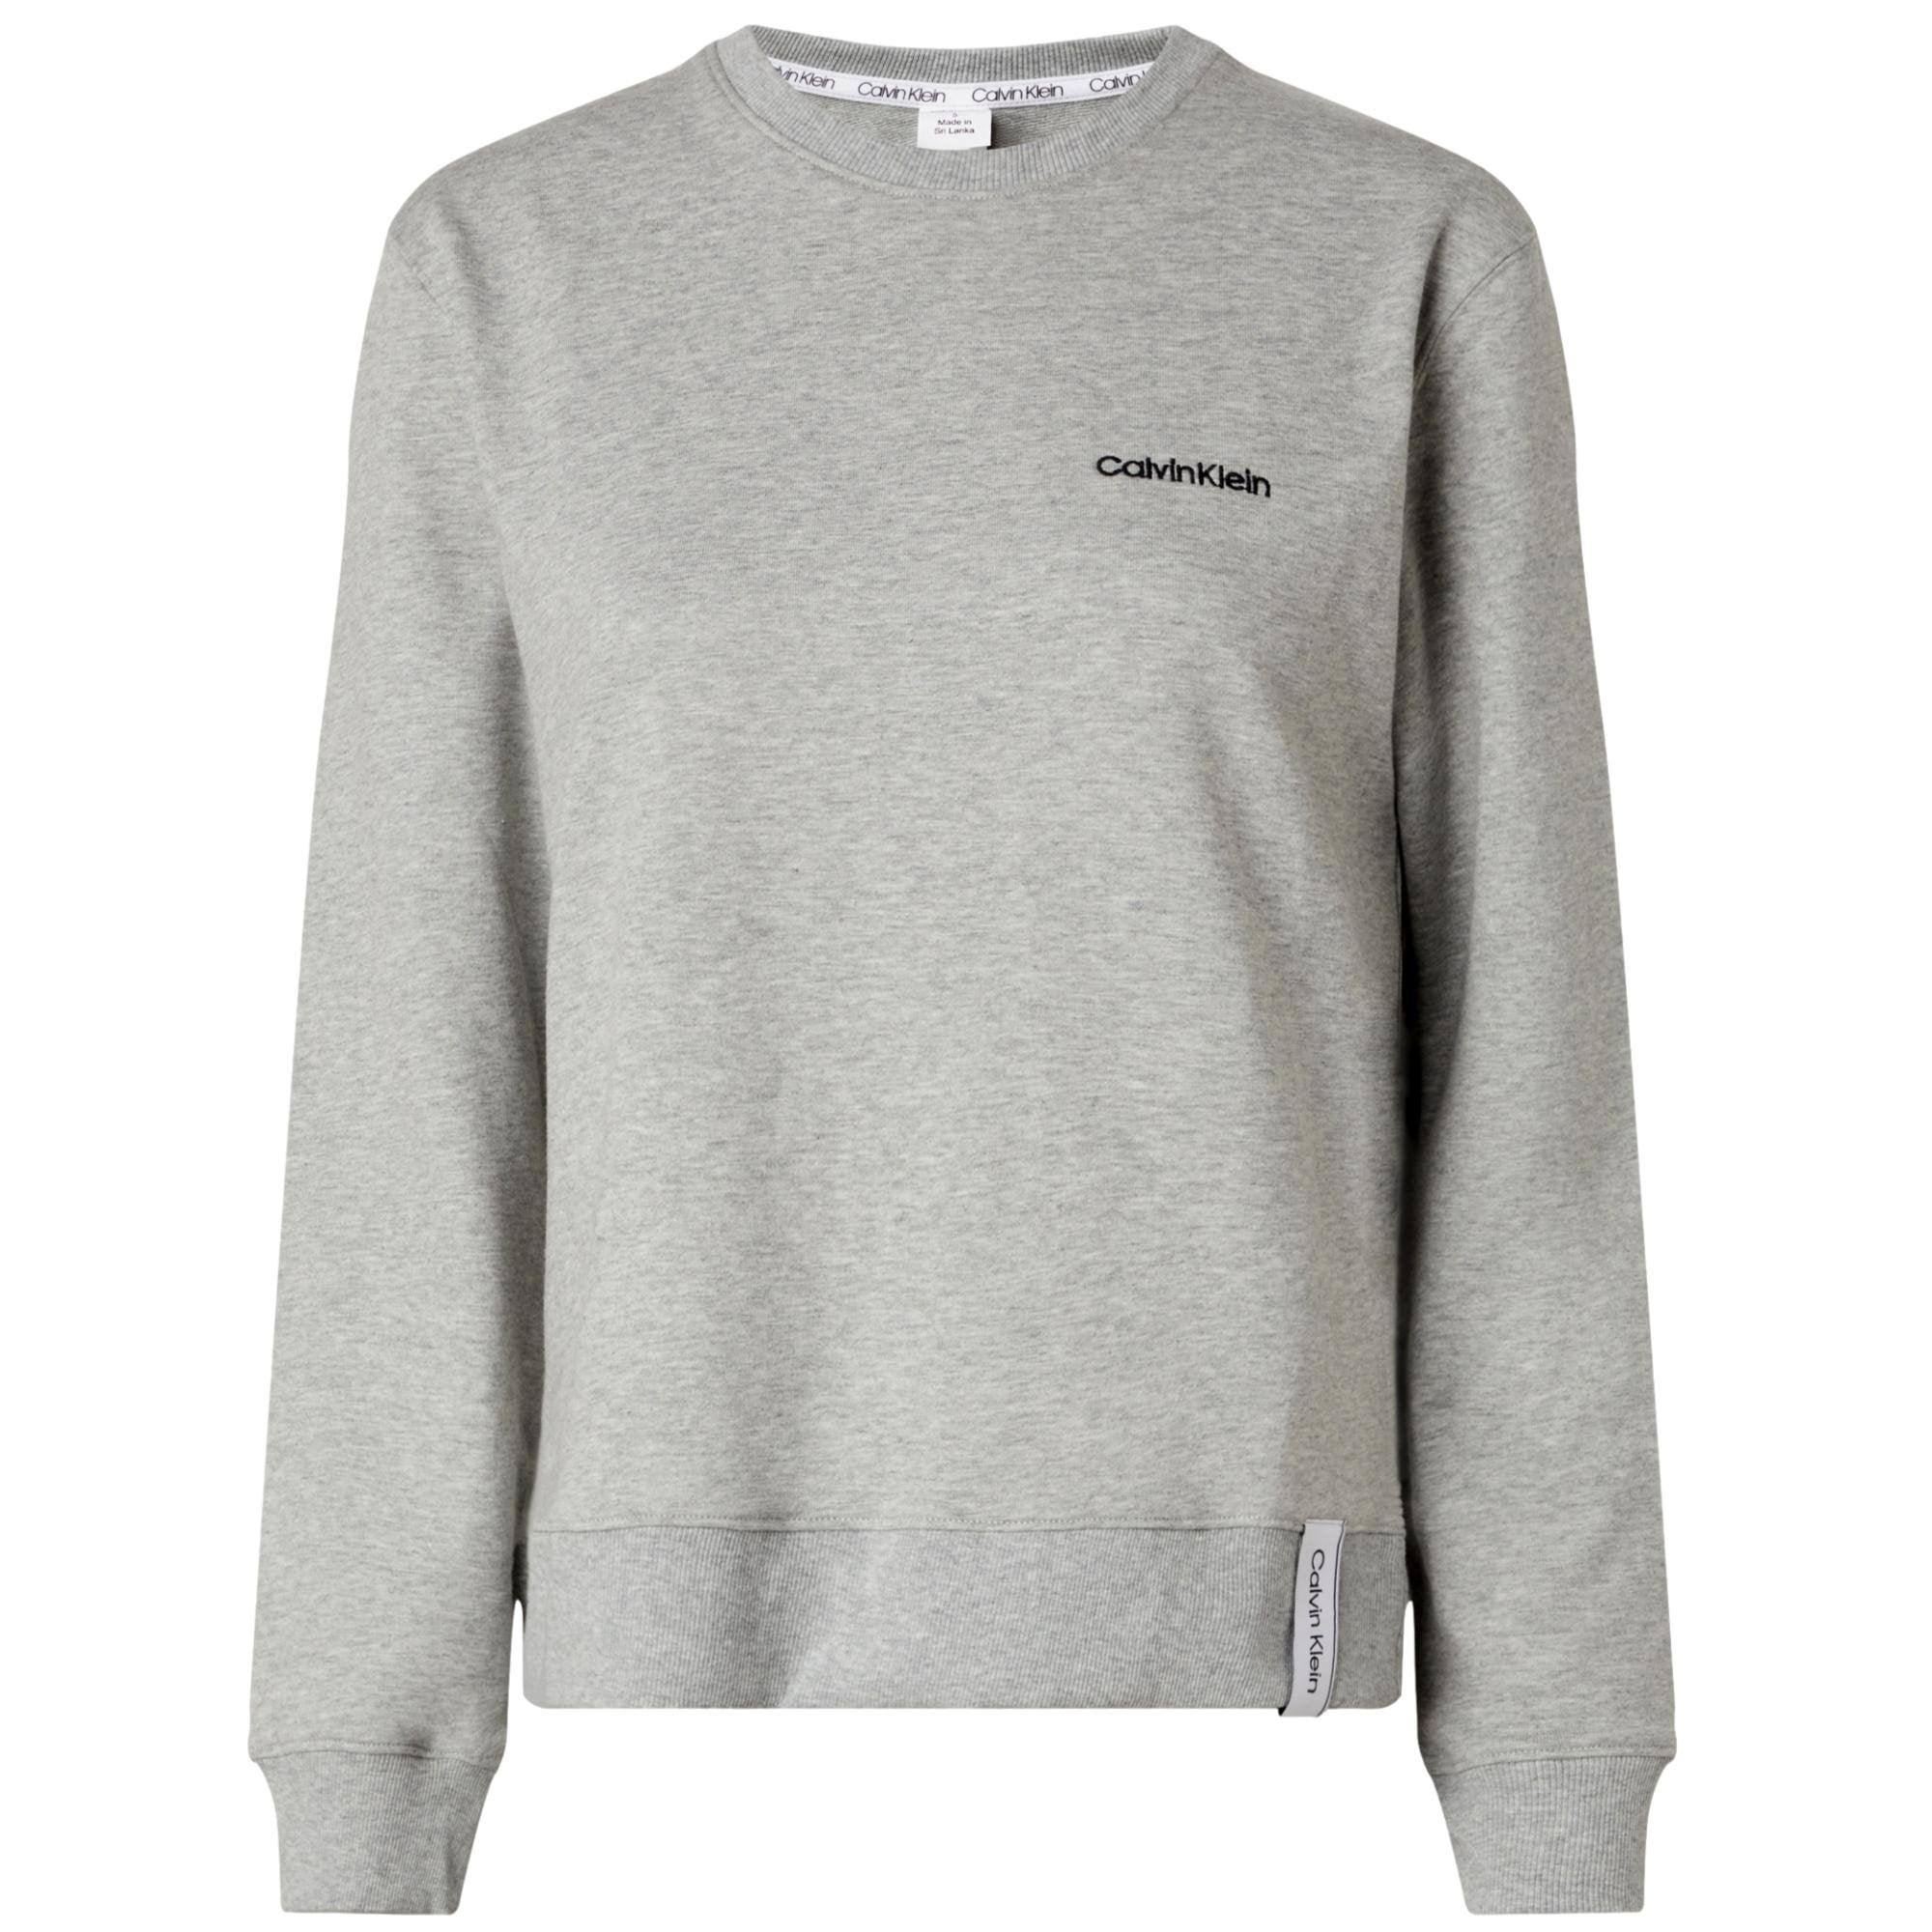 Klein & Calvin - Apparel - Sweatshirt Bear Sleepwear Cotton Utility Grey Accessories Heather Modern